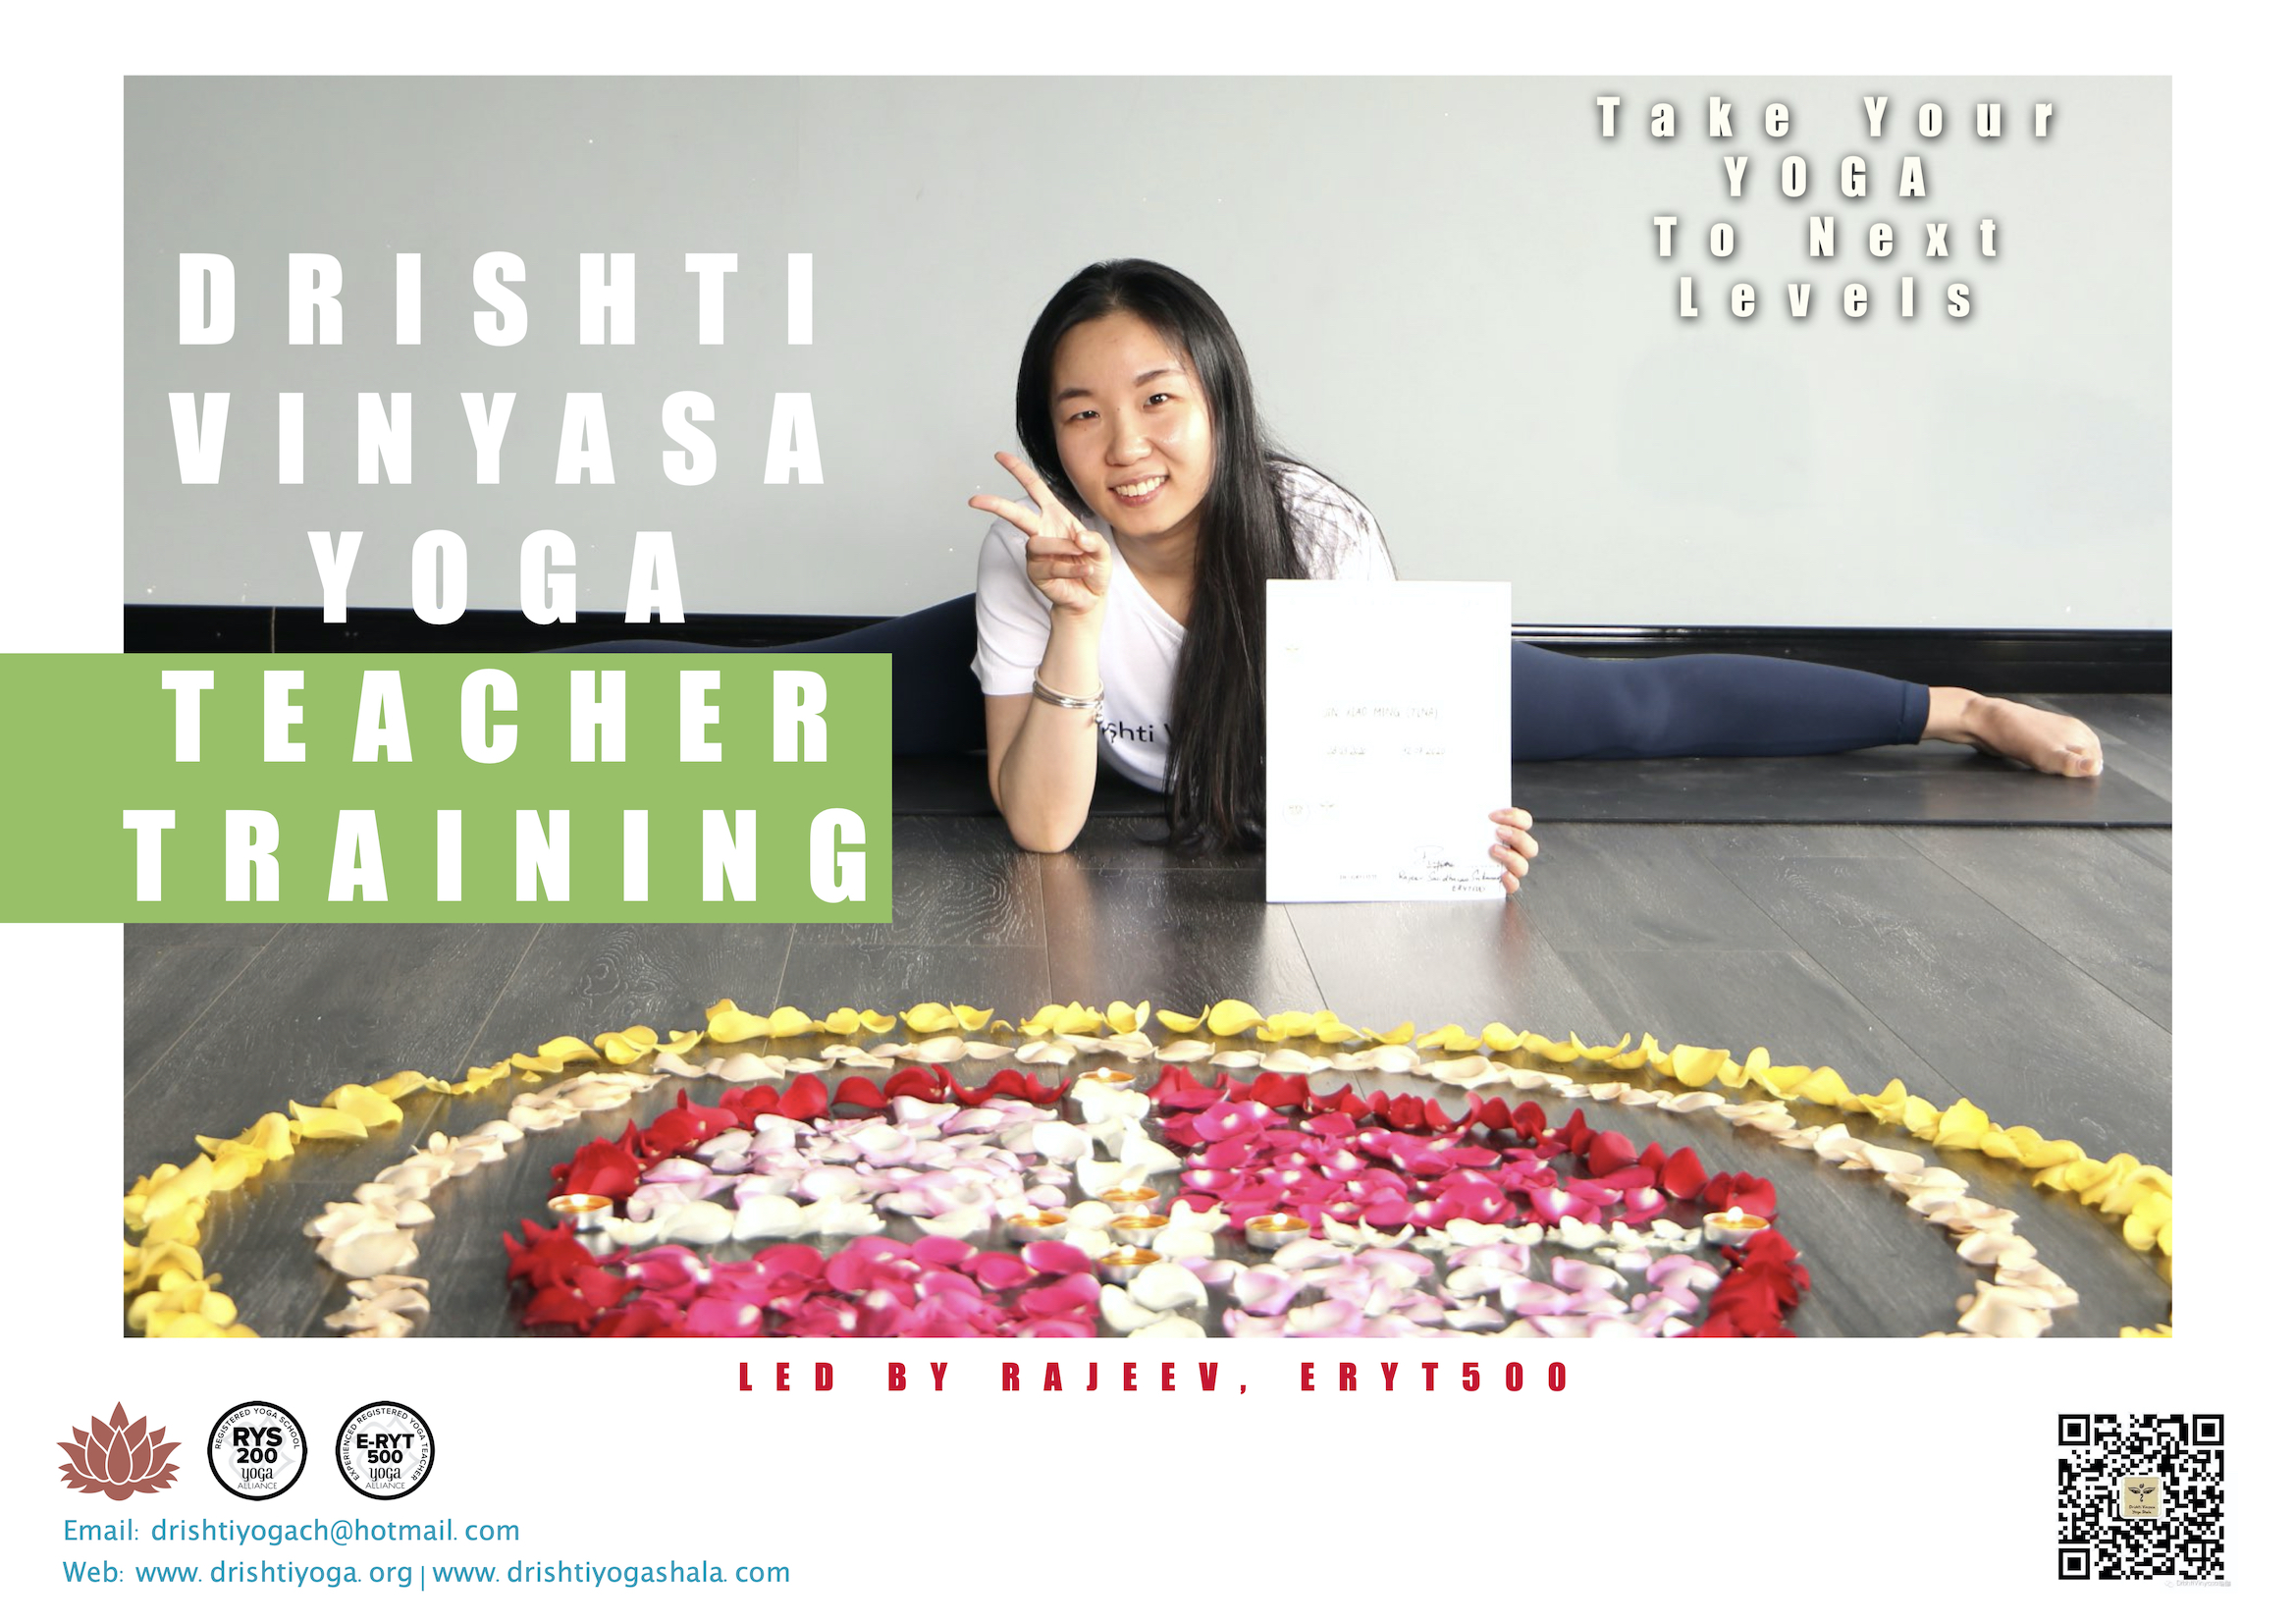 Drishti Vinyasa Yoga Teacher Training - Aug-Nov 2020 - Shanghai, China copy 8-p1.jpg